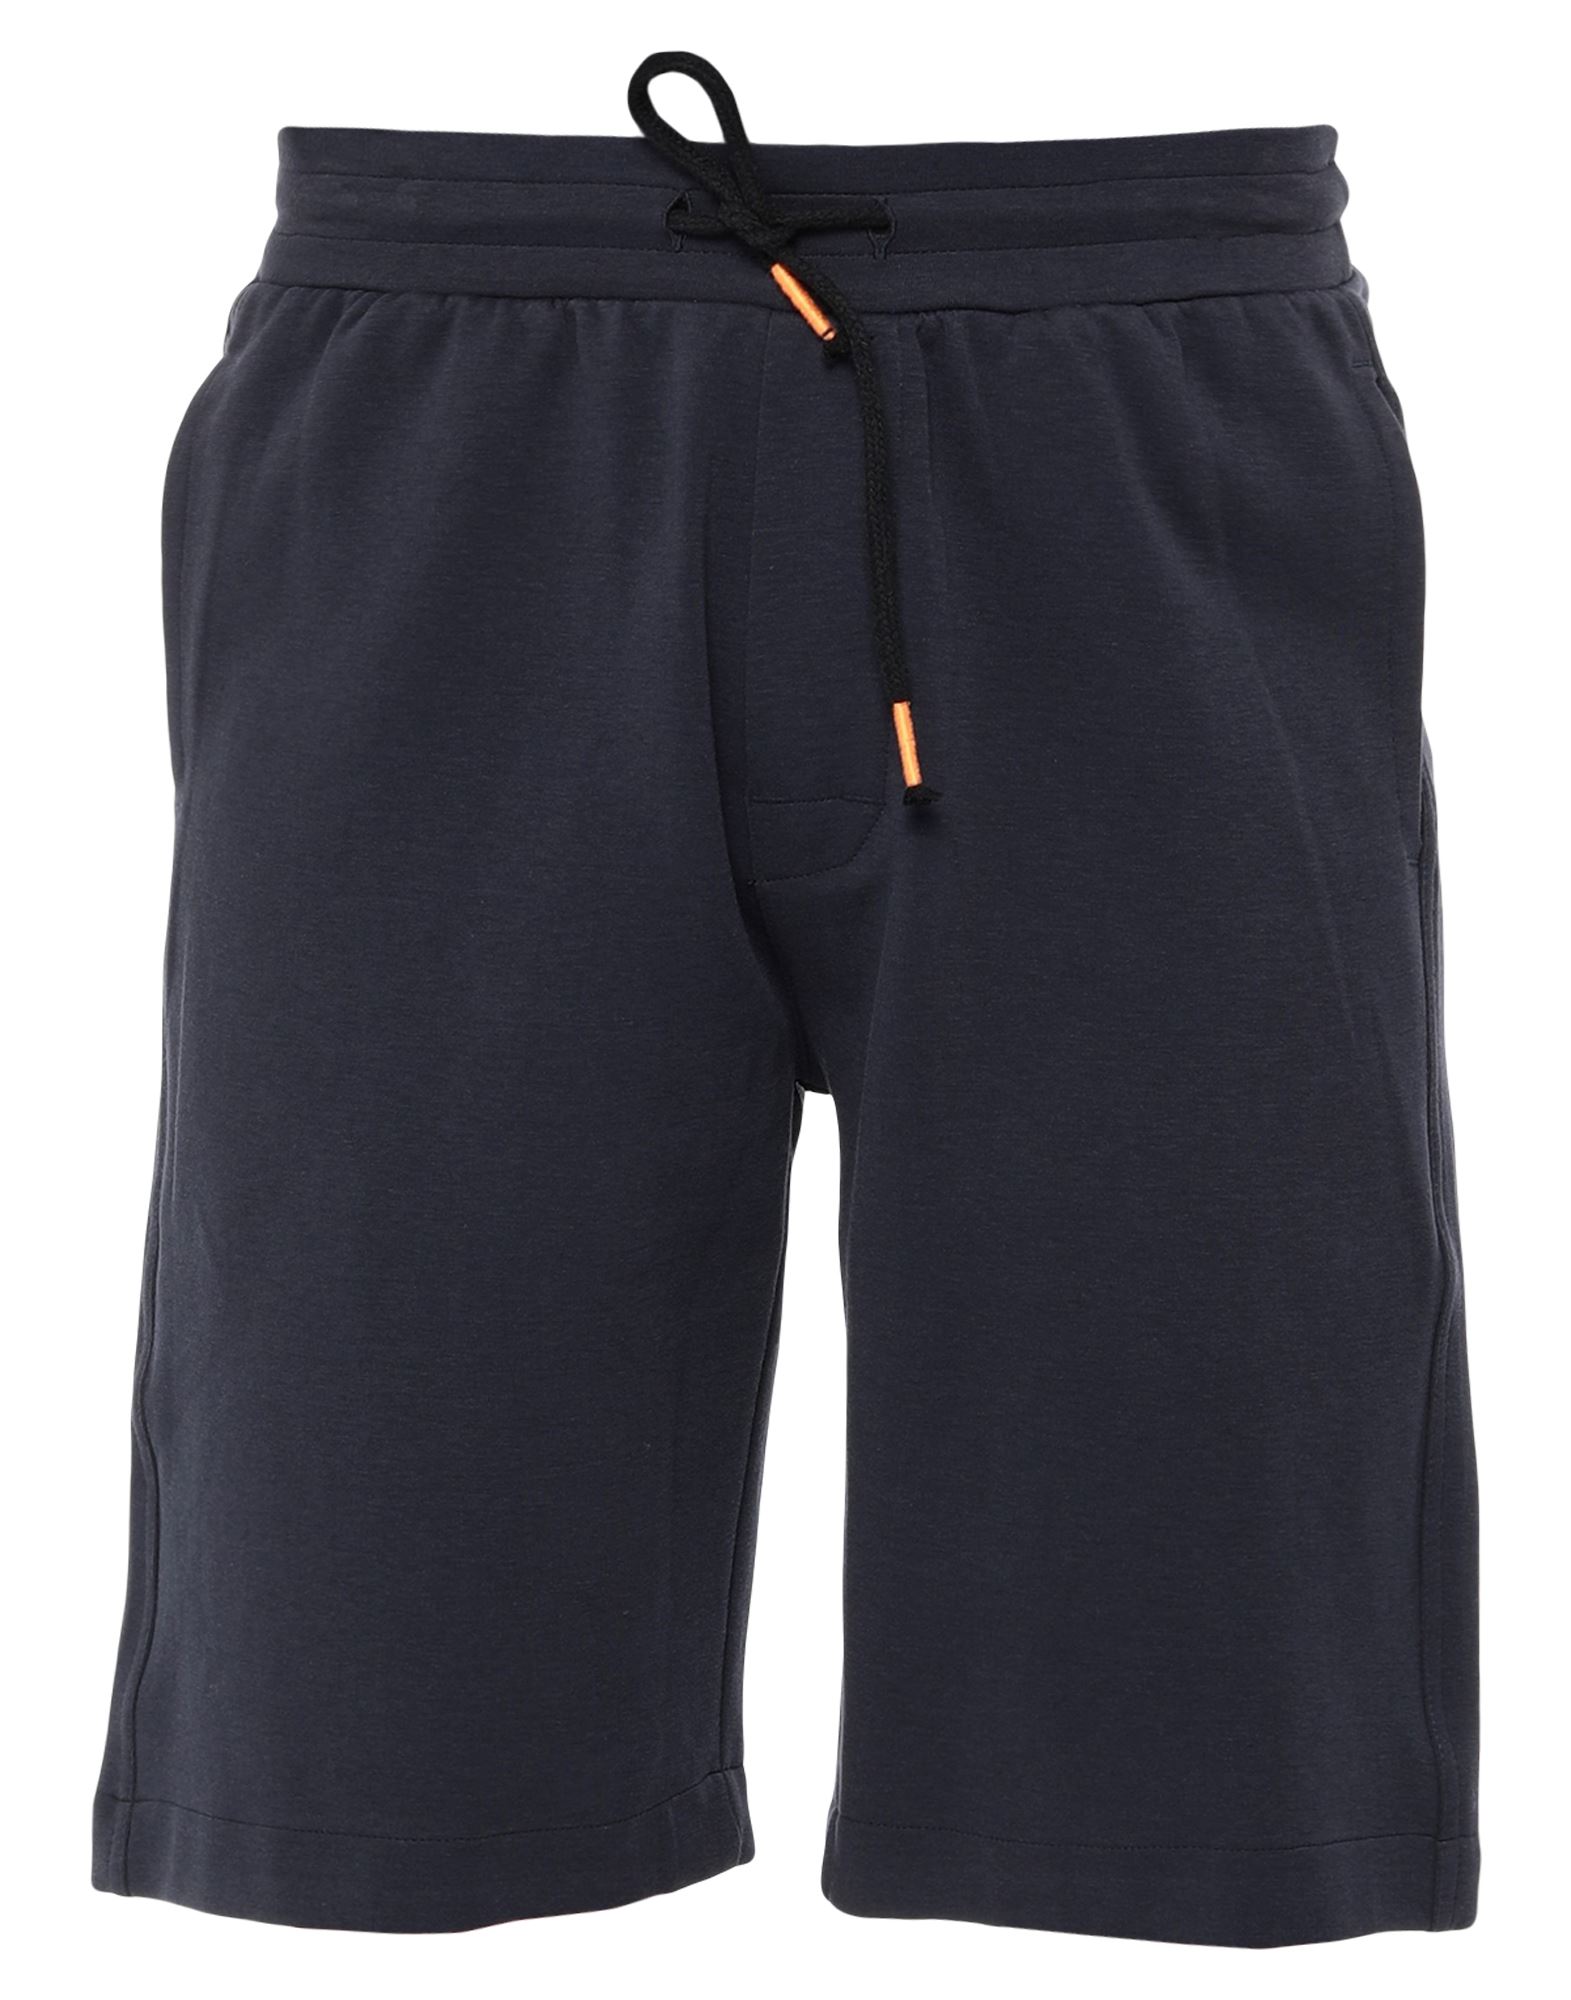 DEKKER Shorts & Bermuda Shorts